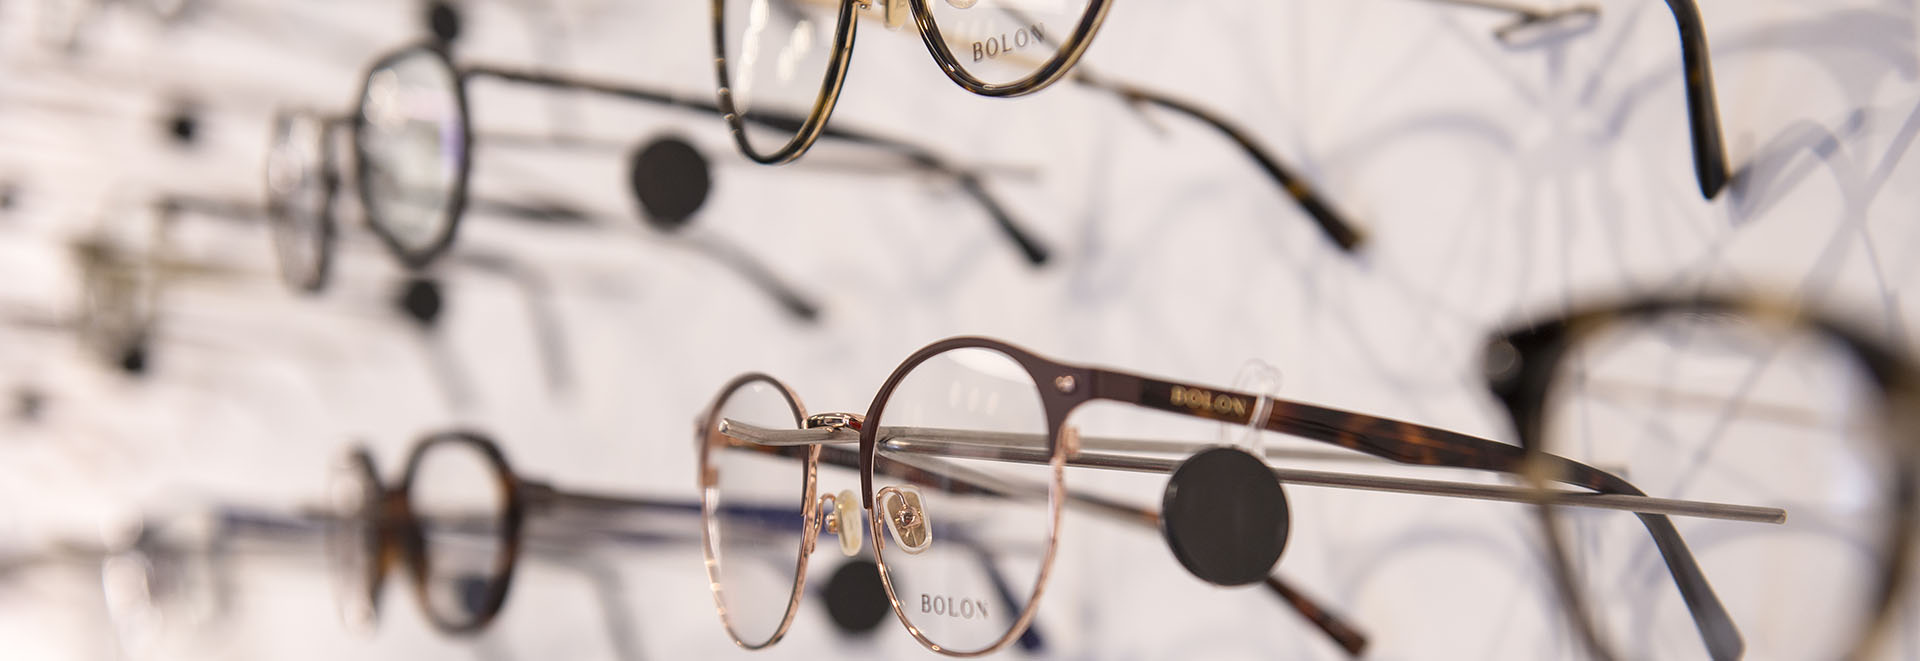 Optiek Pieters Kortrijk - Brillen, lenzen, zonnebrillen